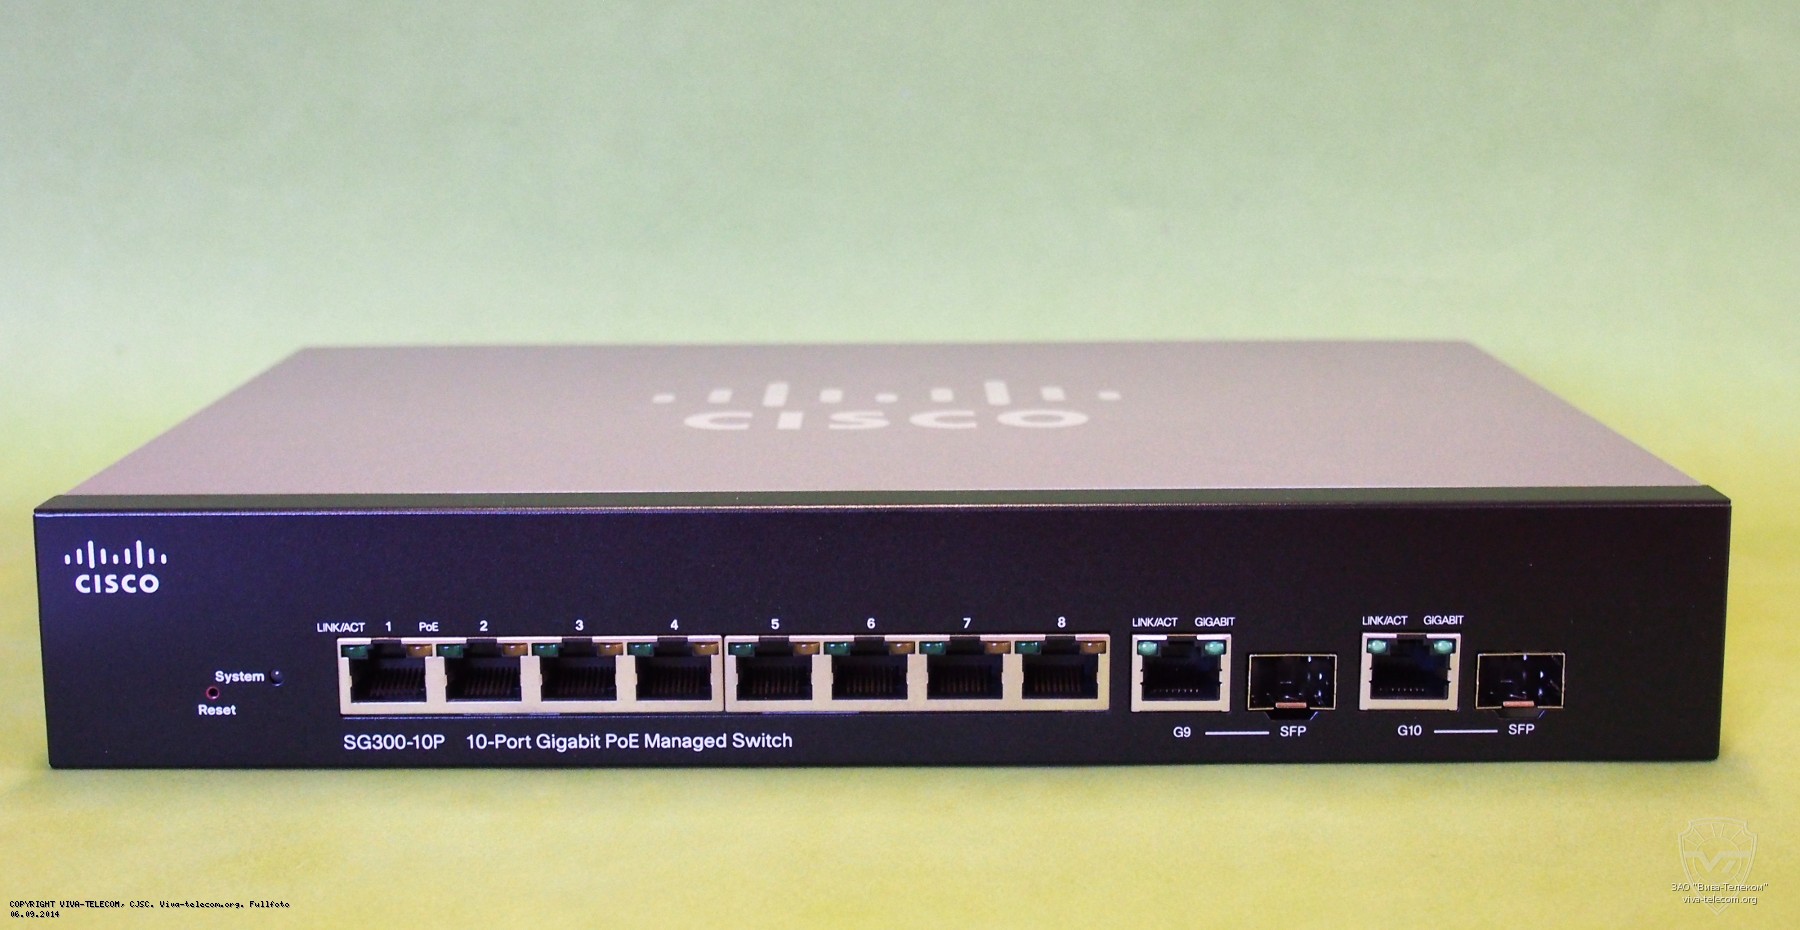    Cisco SG300-10P